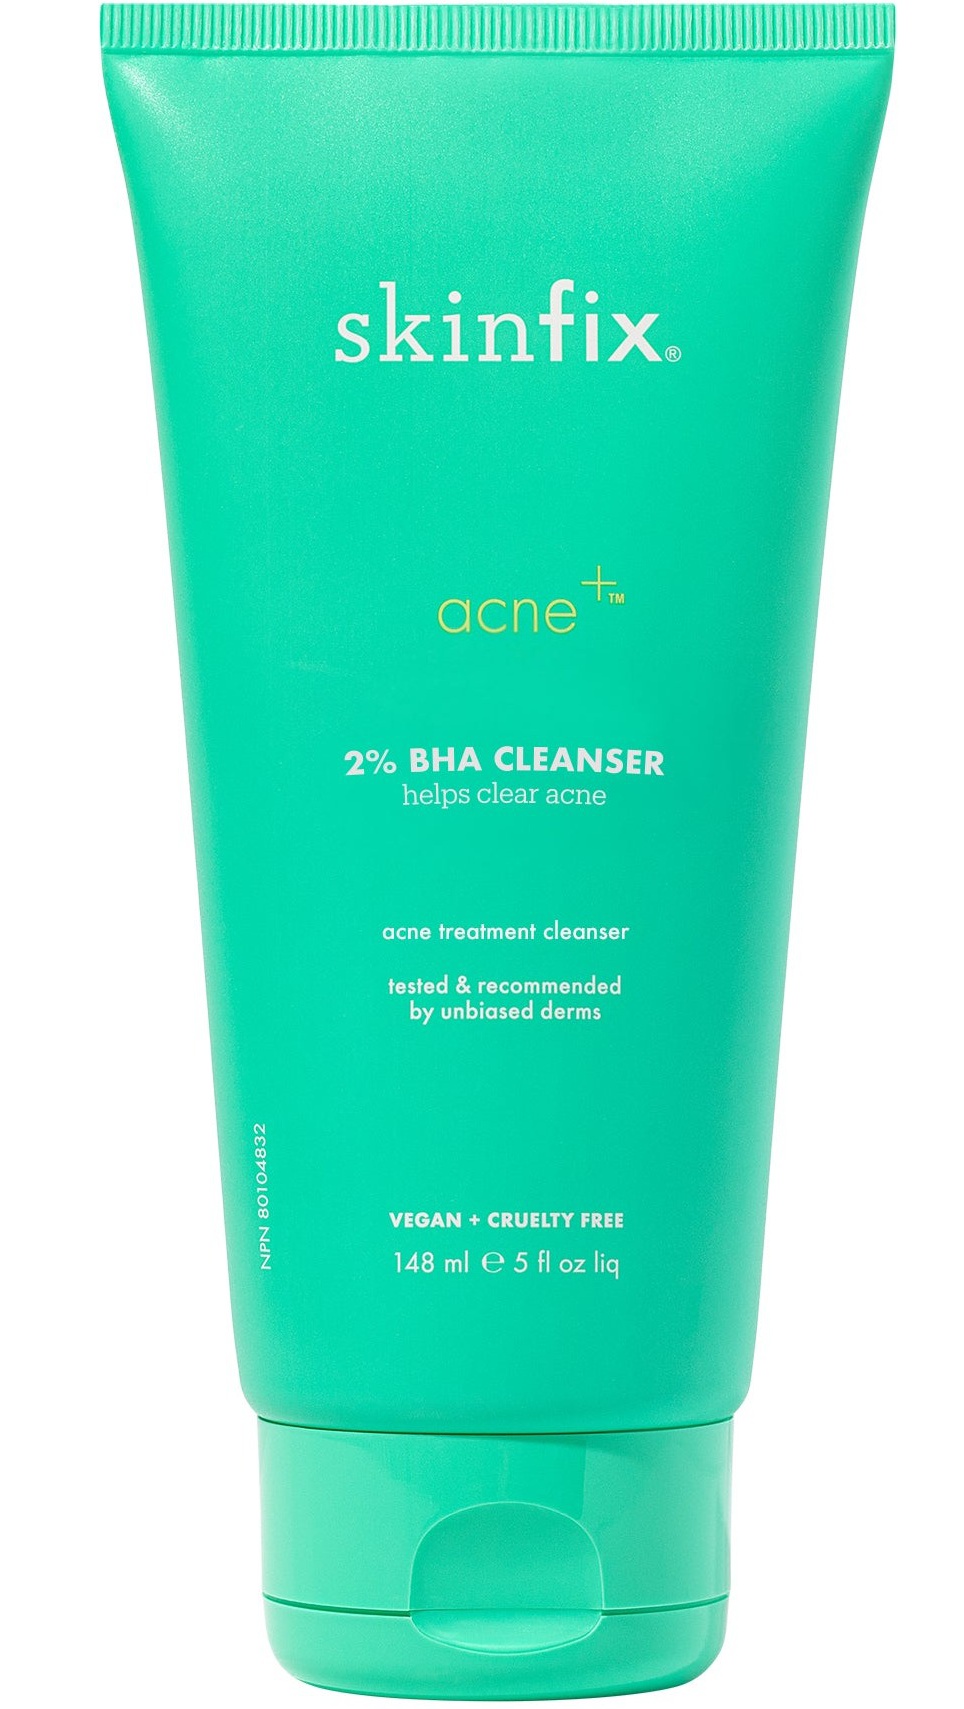 Skinfix Acne+ 2% BHA Cleanser